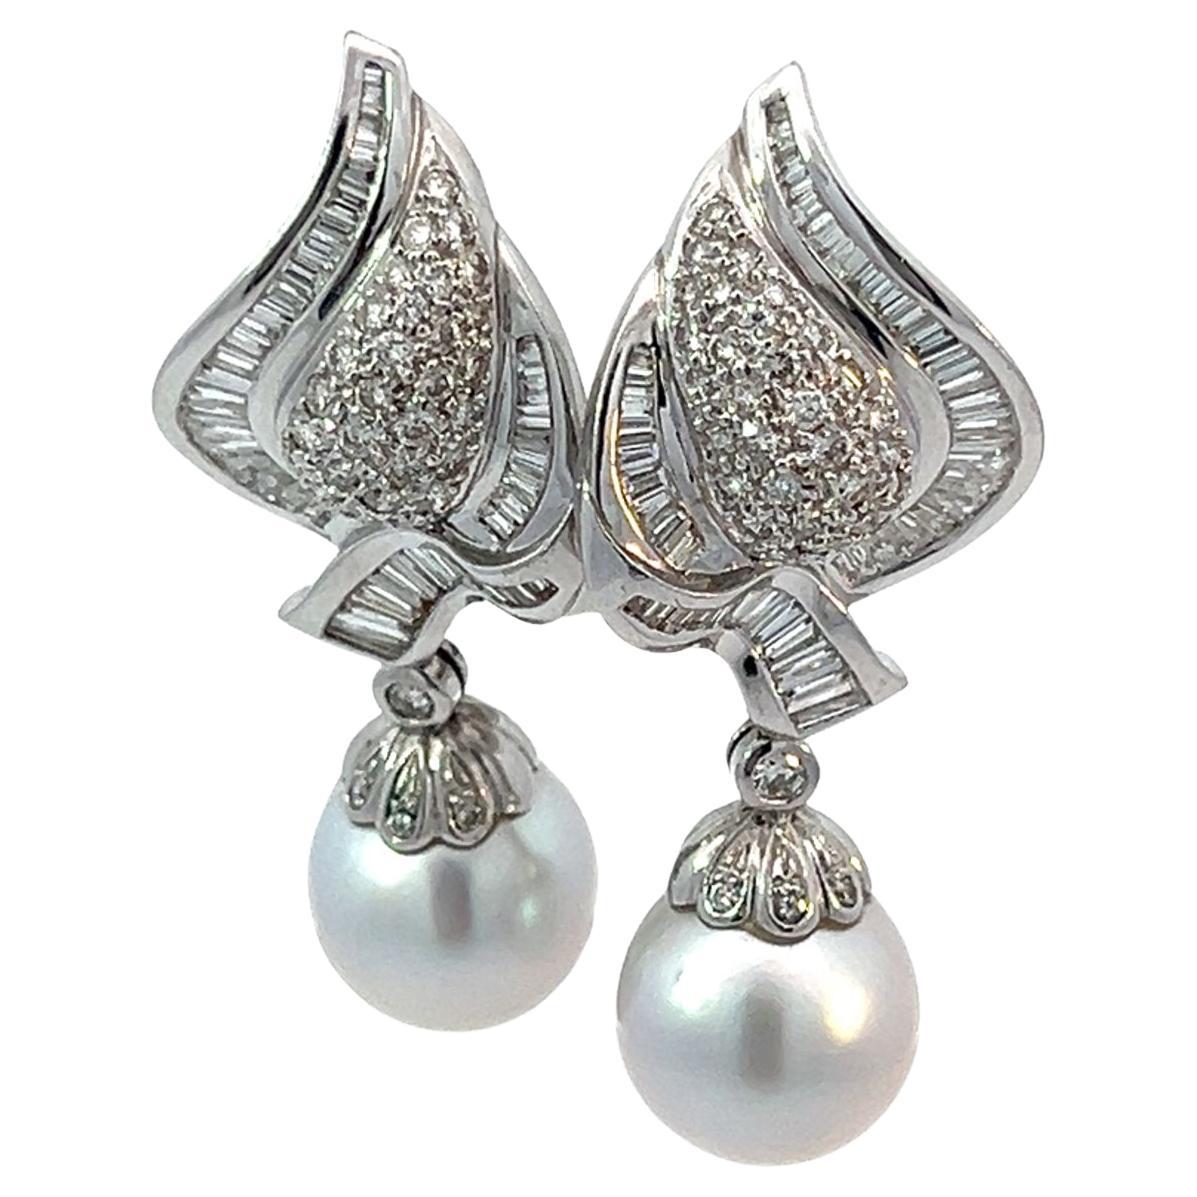  Boucles d'oreilles pendantes amovibles en perles et diamants